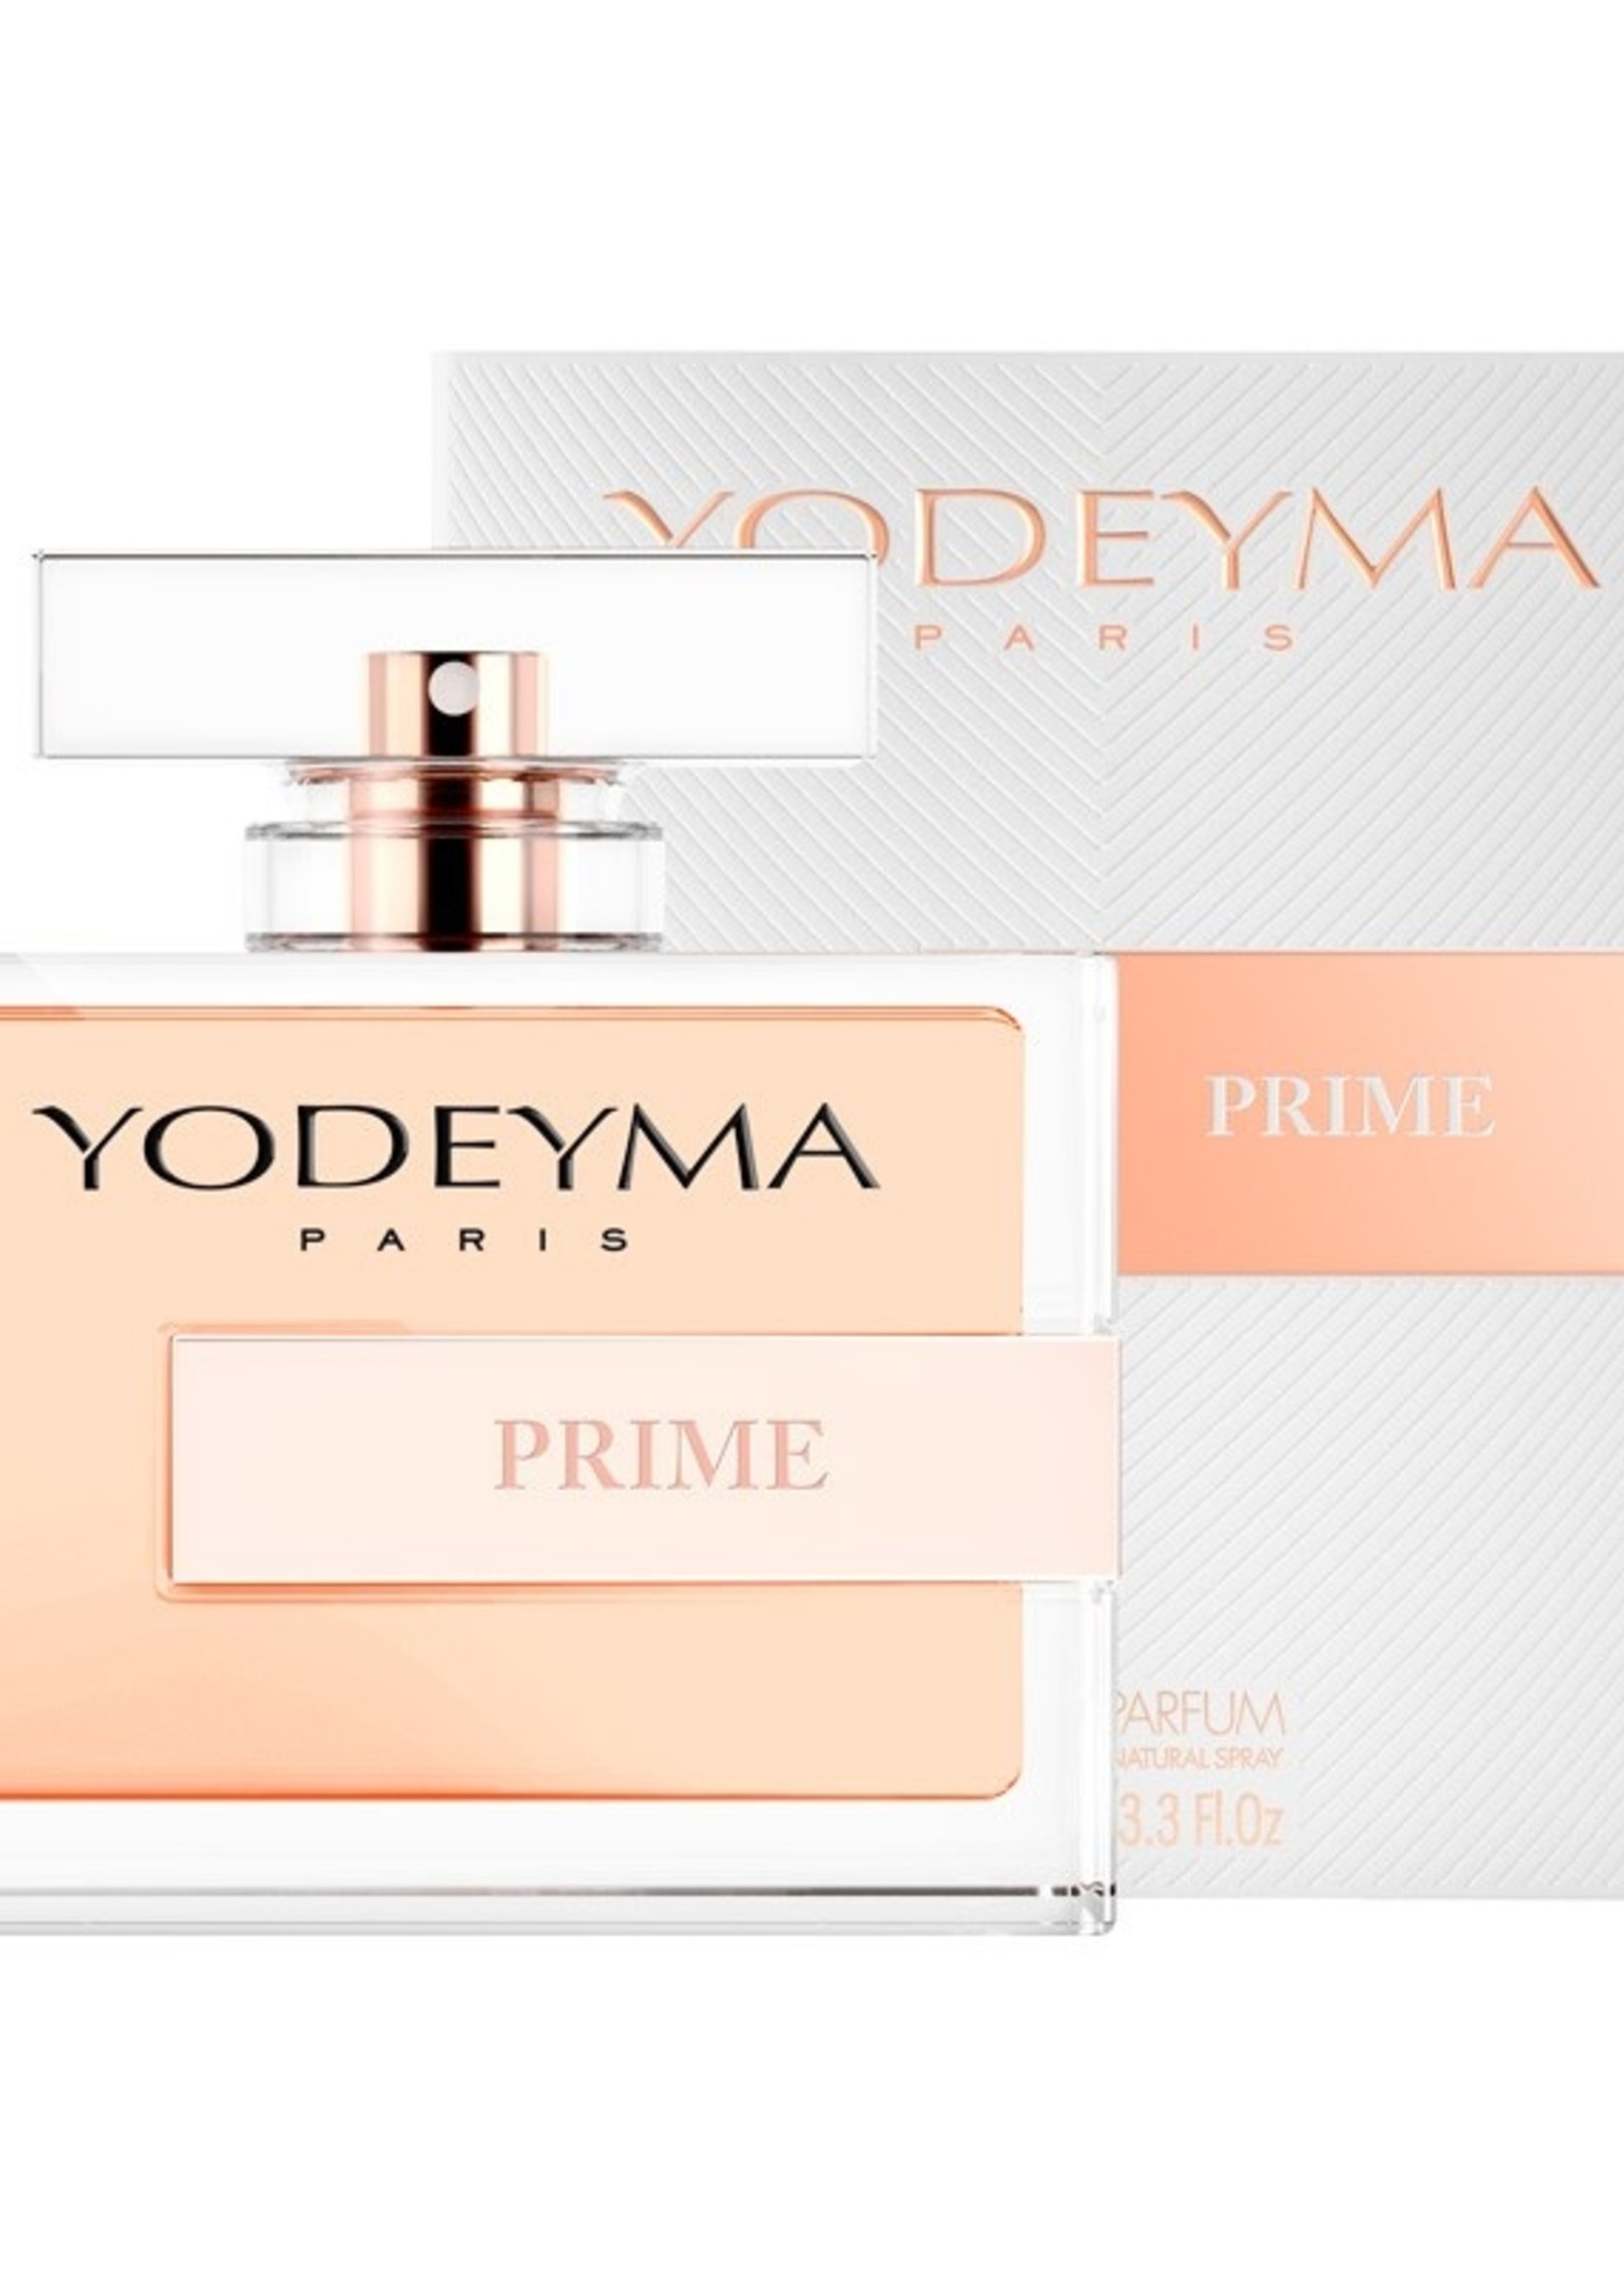 Yodeyma Parfums PRIME Eau de Parfum100 ml.